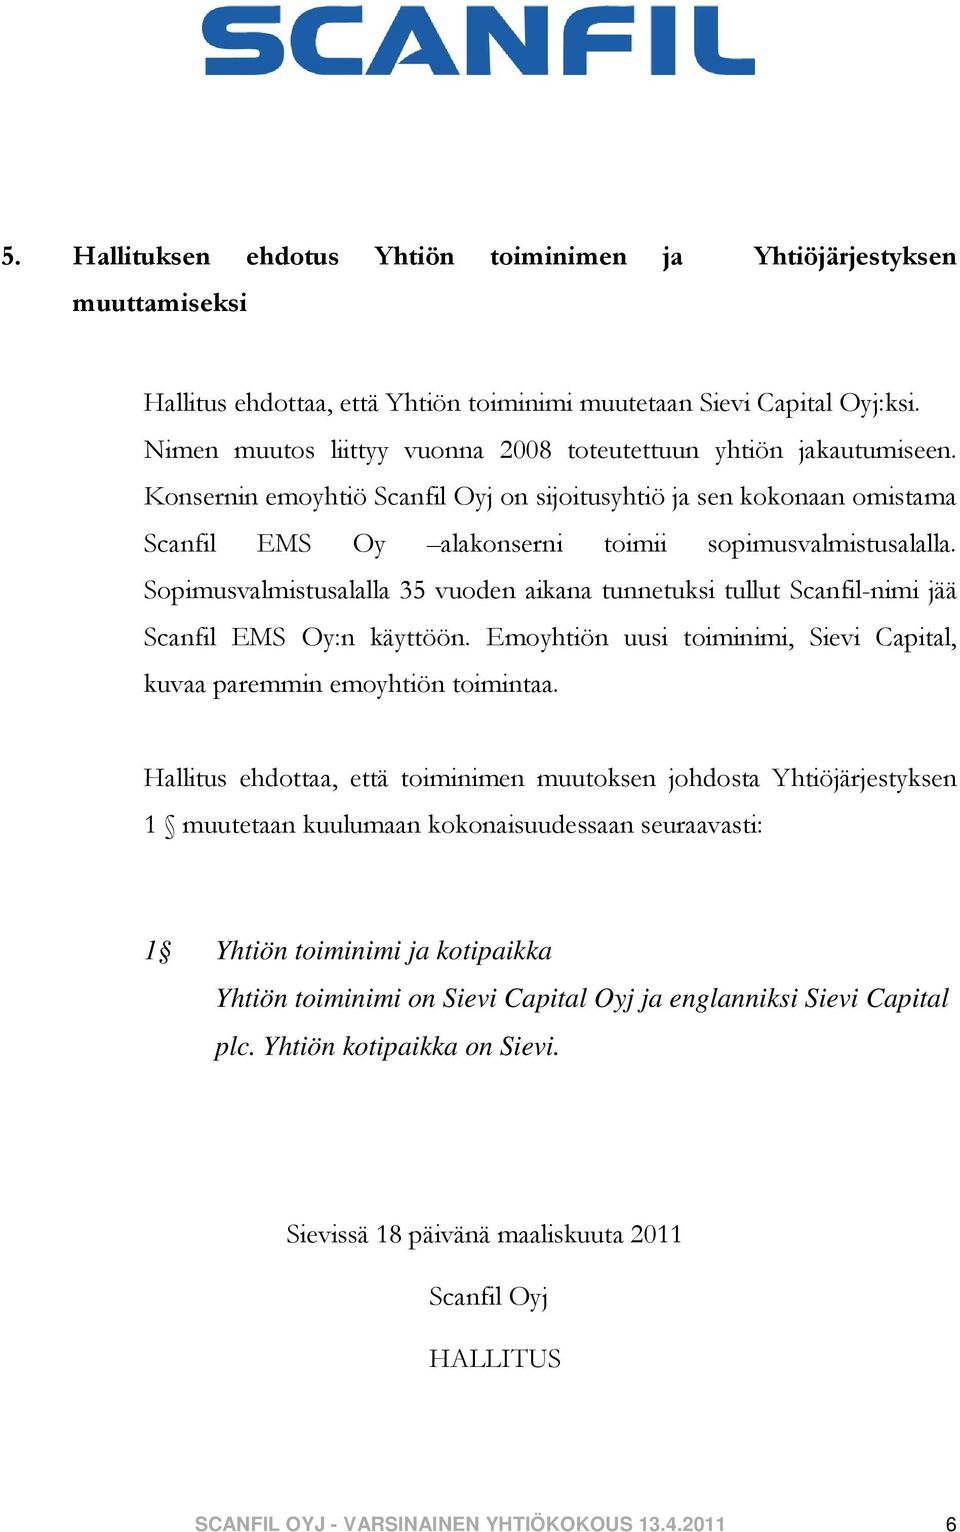 Sopimusvalmistusalalla 35 vuoden aikana tunnetuksi tullut Scanfil-nimi jää Scanfil EMS Oy:n käyttöön. Emoyhtiön uusi toiminimi, Sievi Capital, kuvaa paremmin emoyhtiön toimintaa.